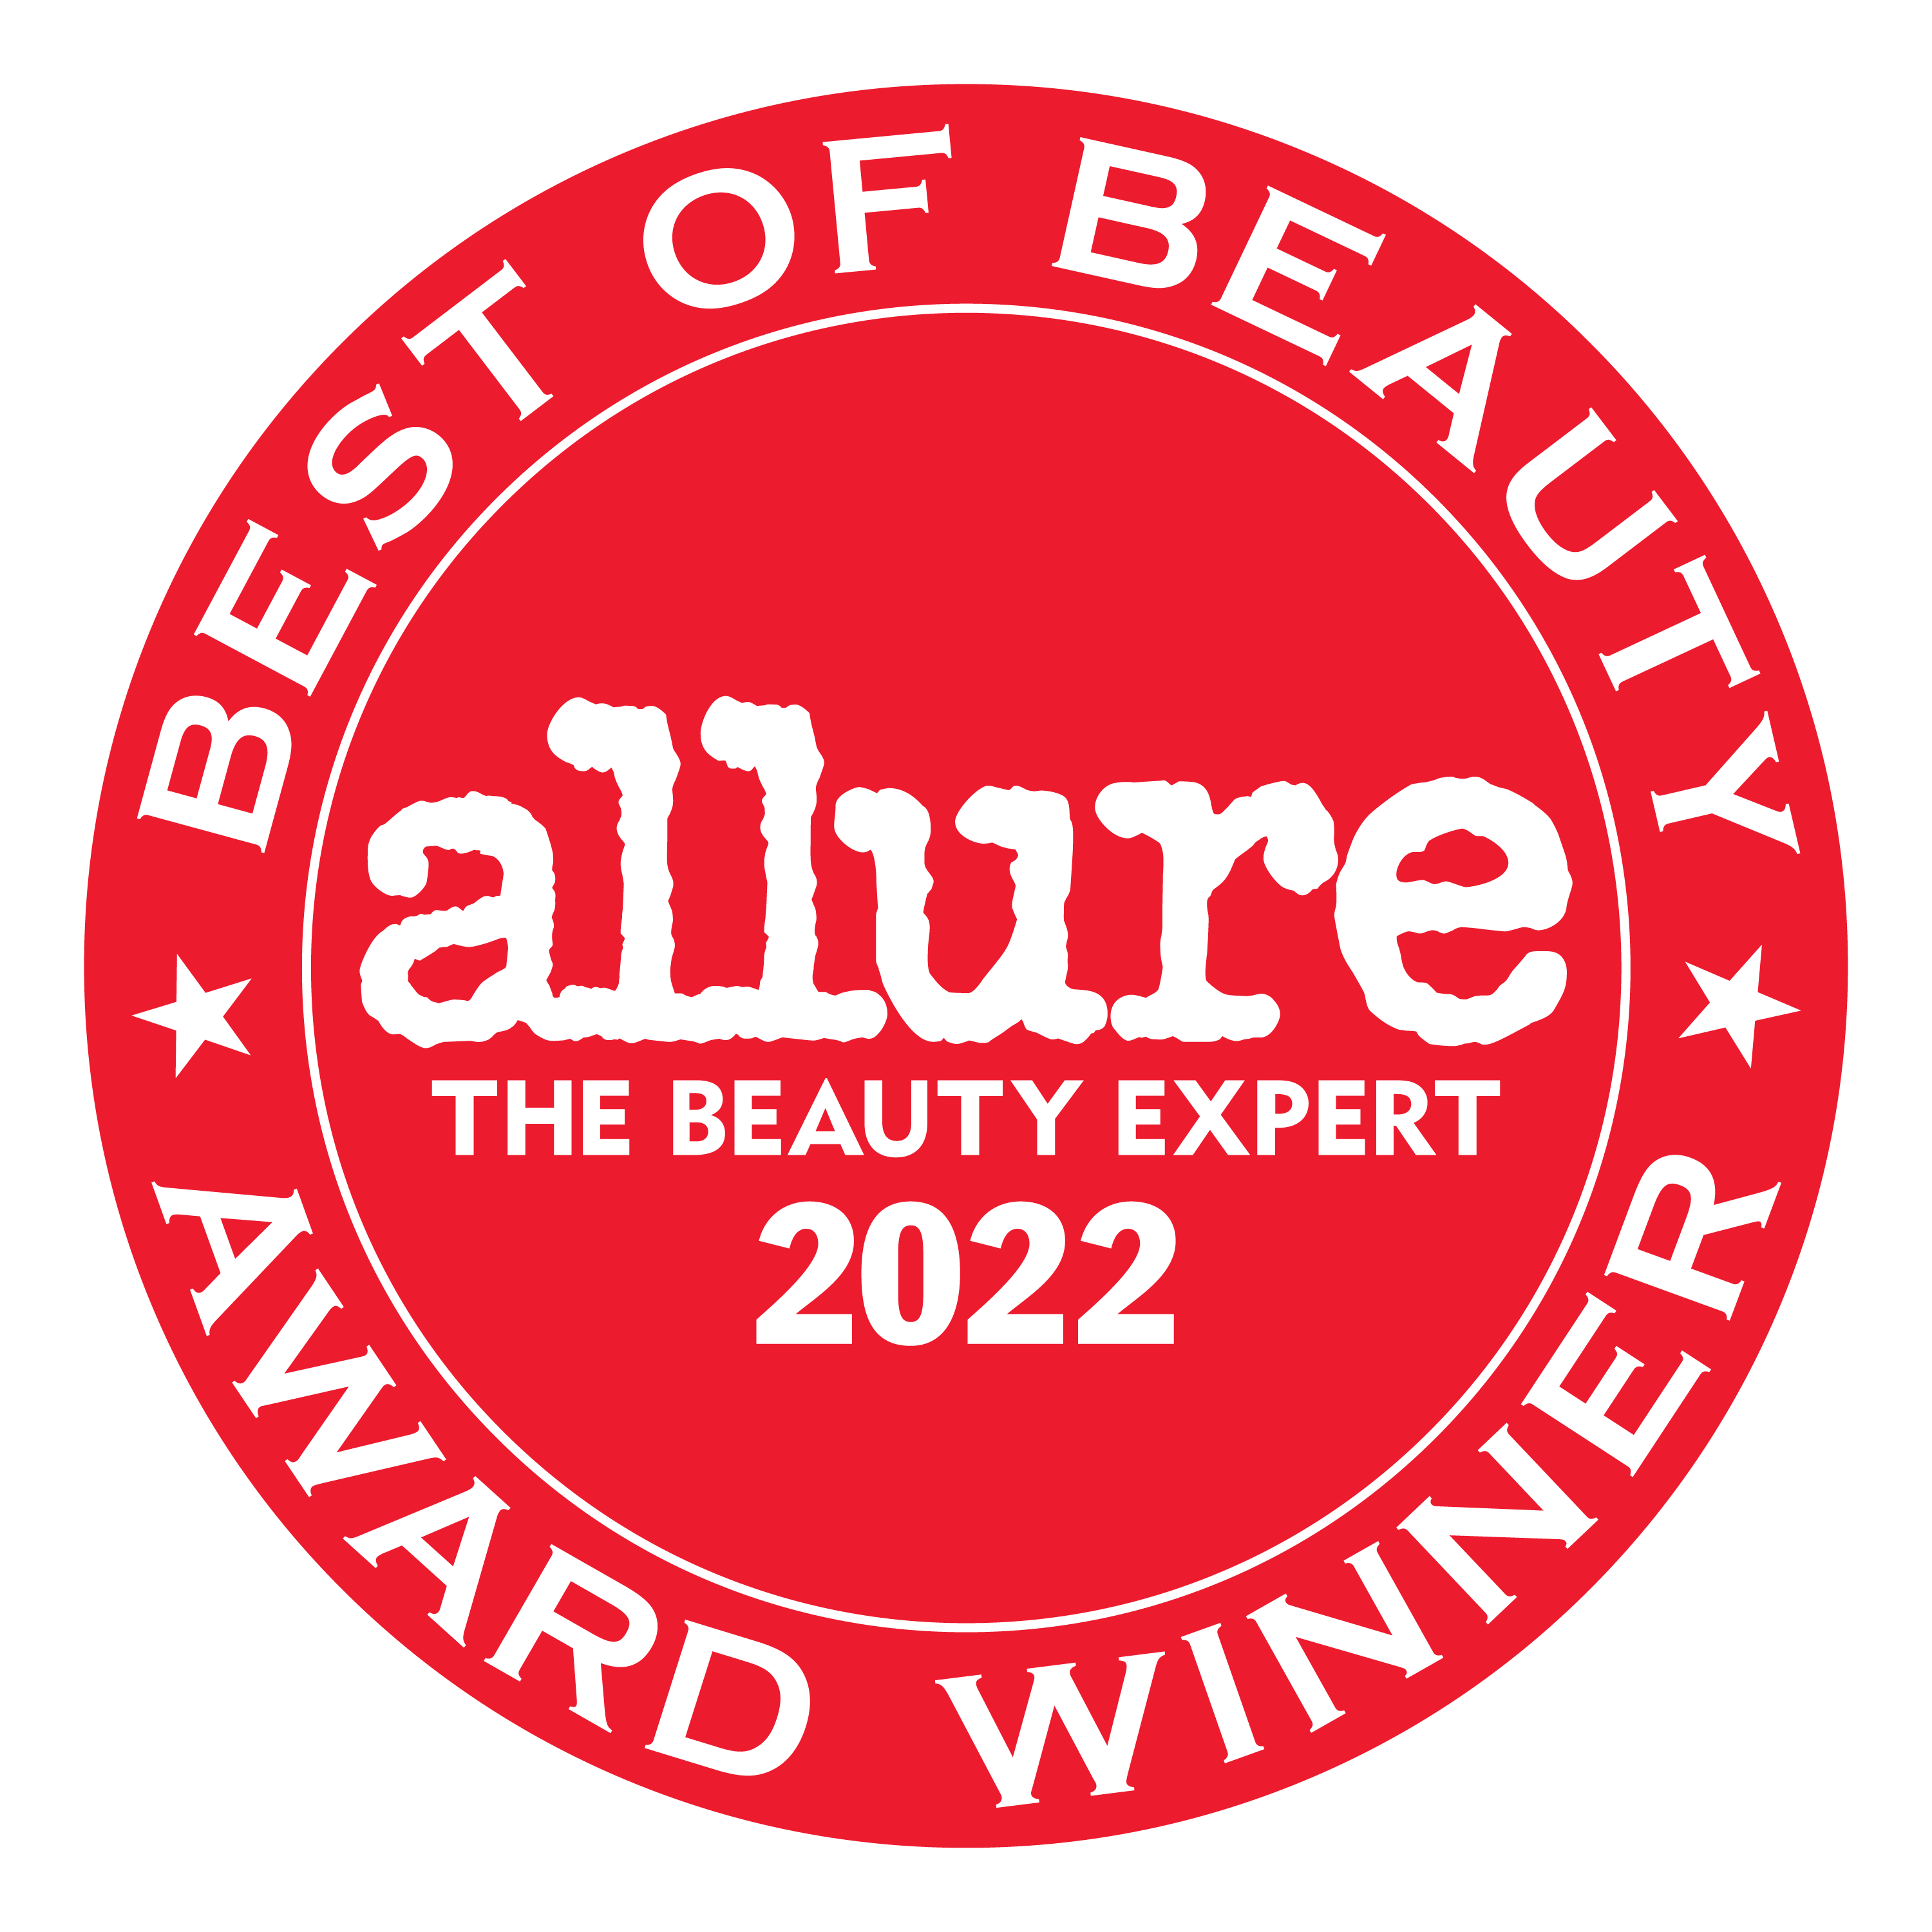 Allure Best of Beauty Award Winner 2022